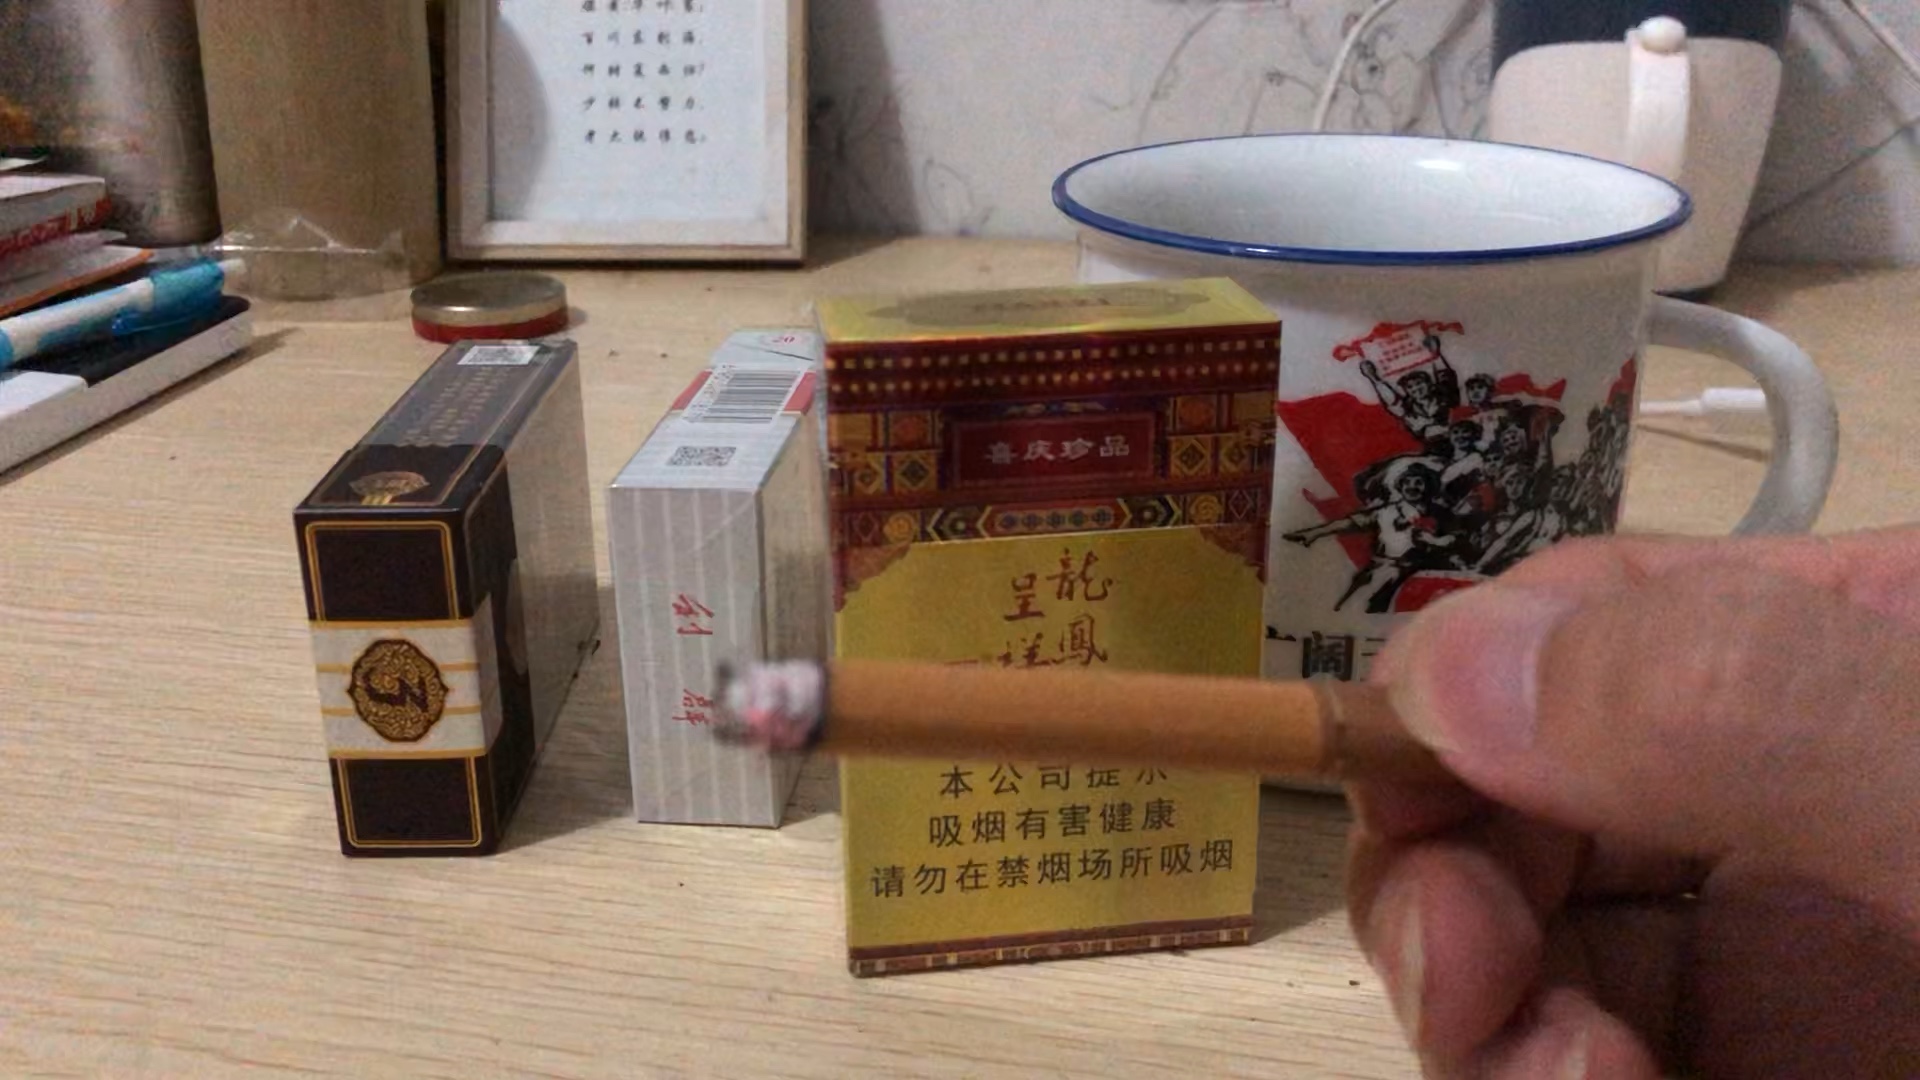 龙凤呈祥香烟棕色烟身图片